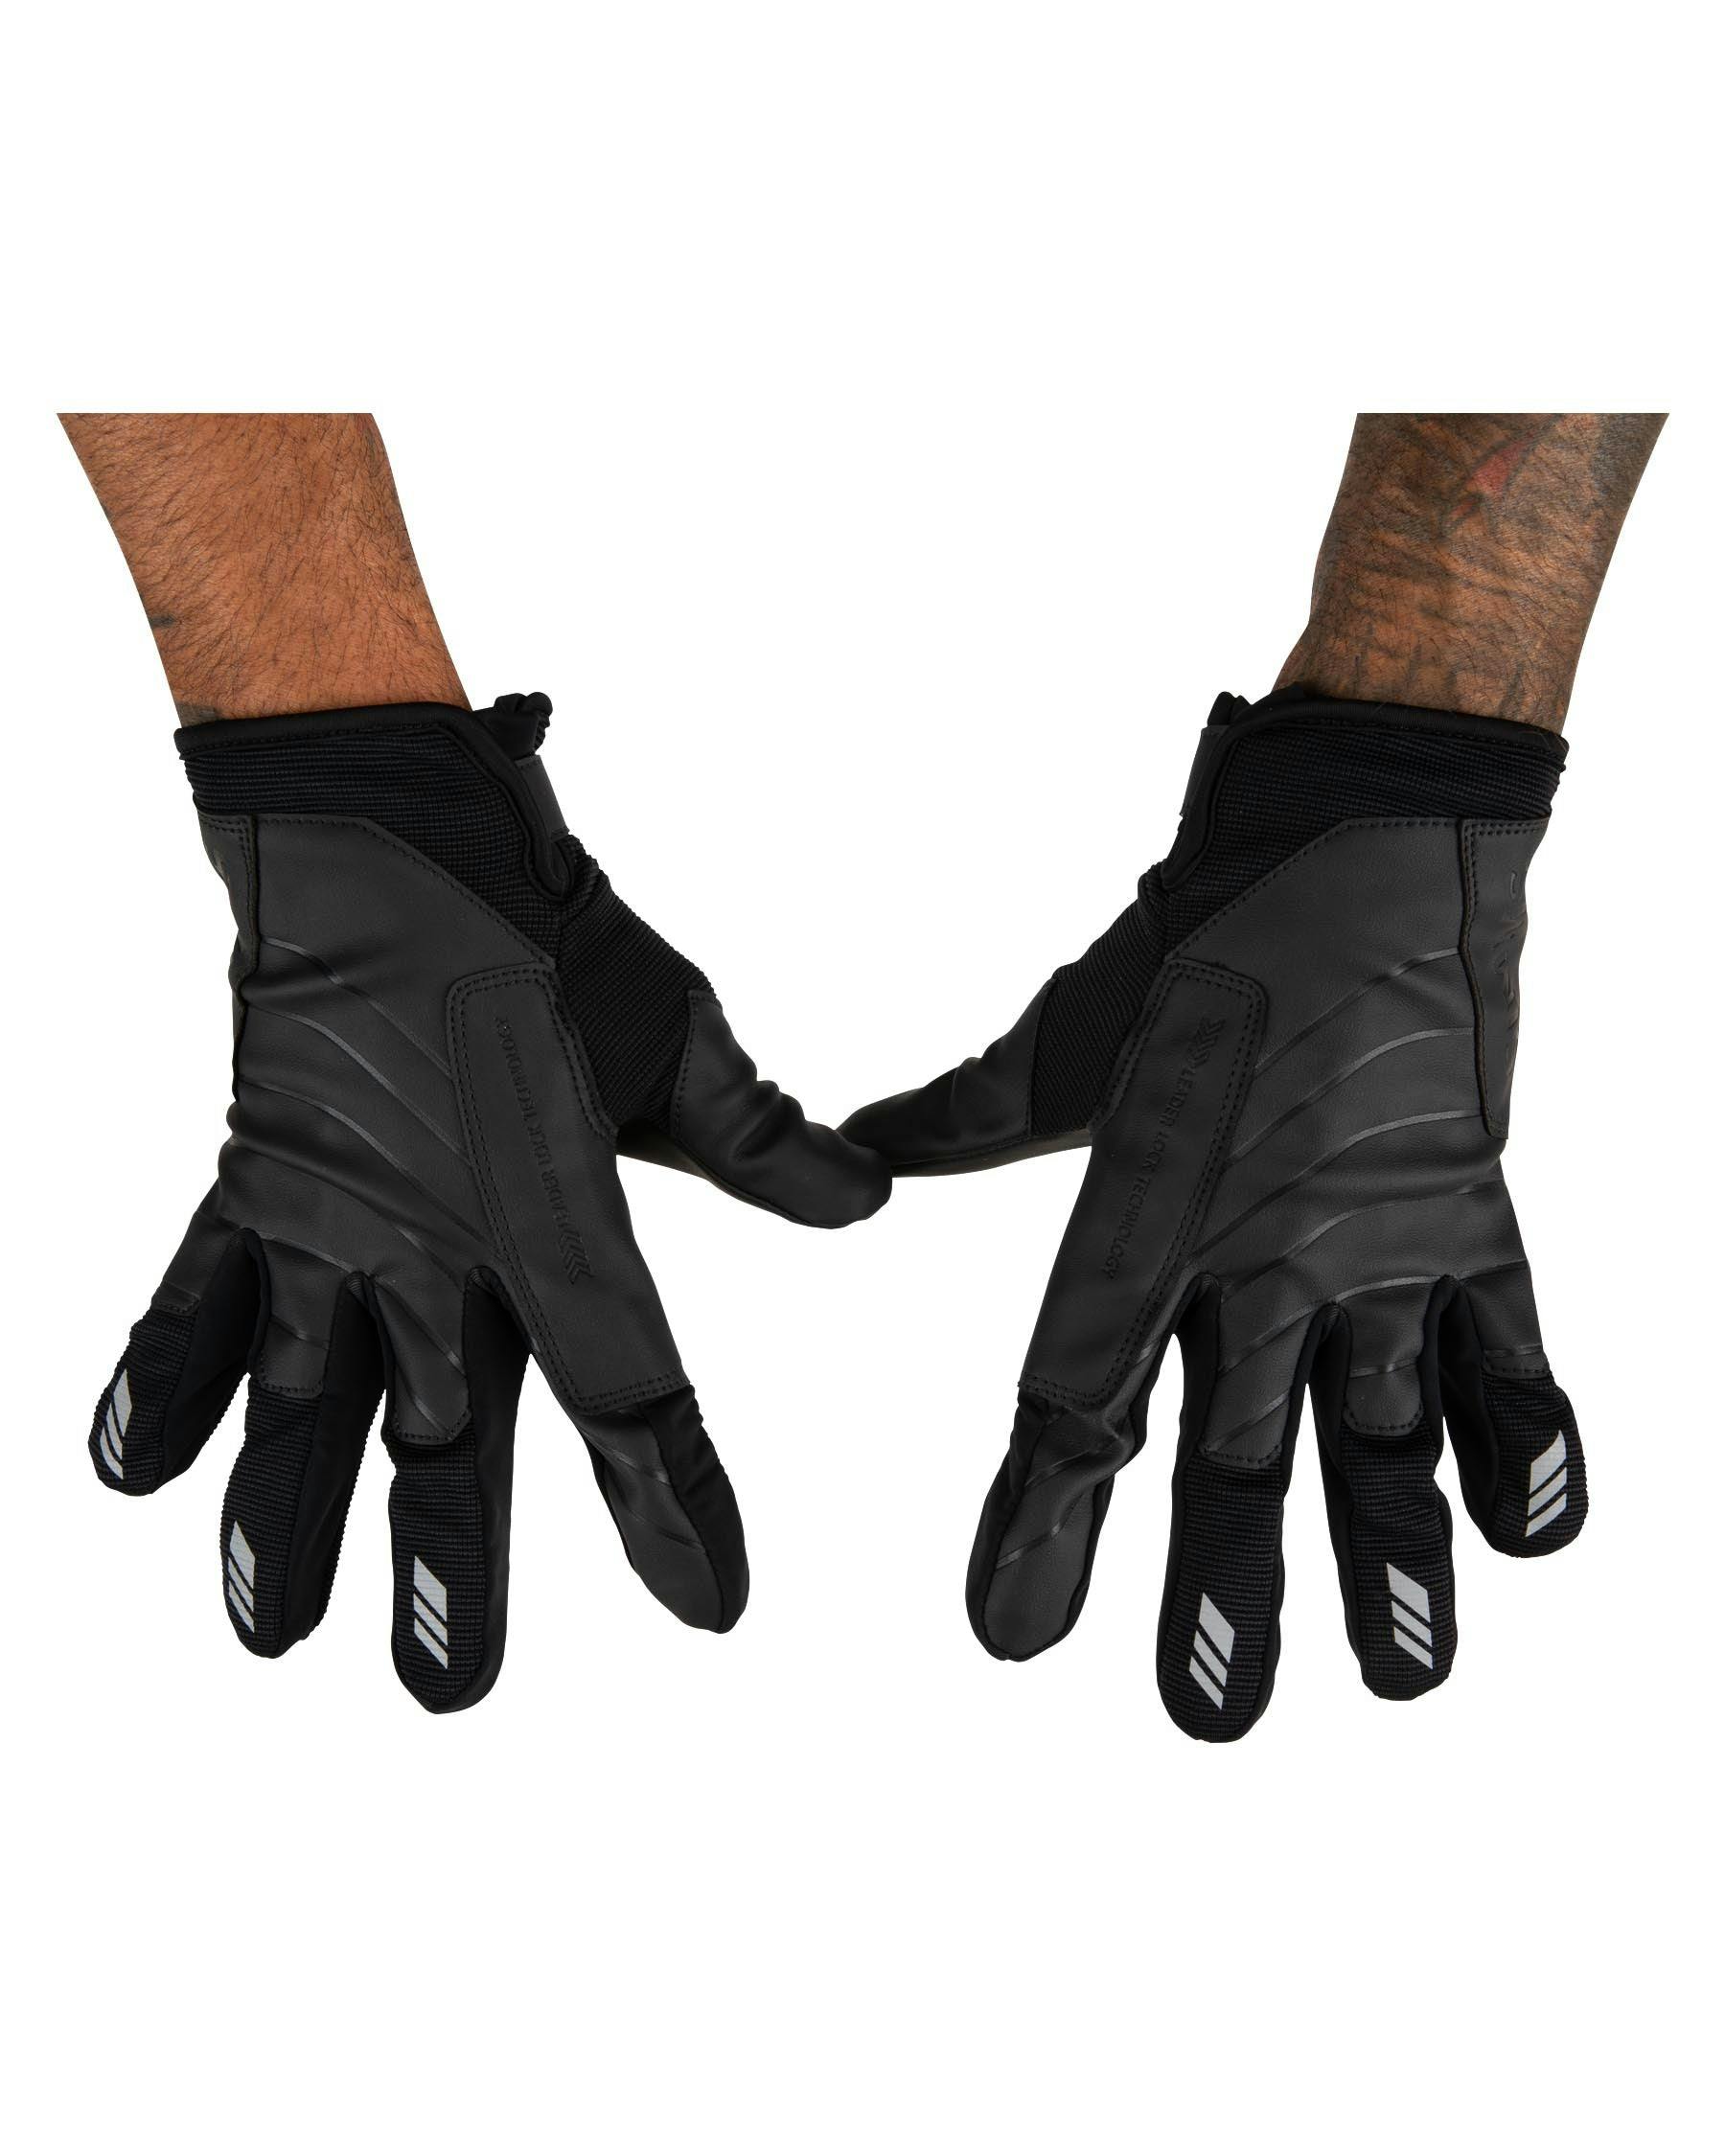 Simms Men's Offshore Angler's Gloves